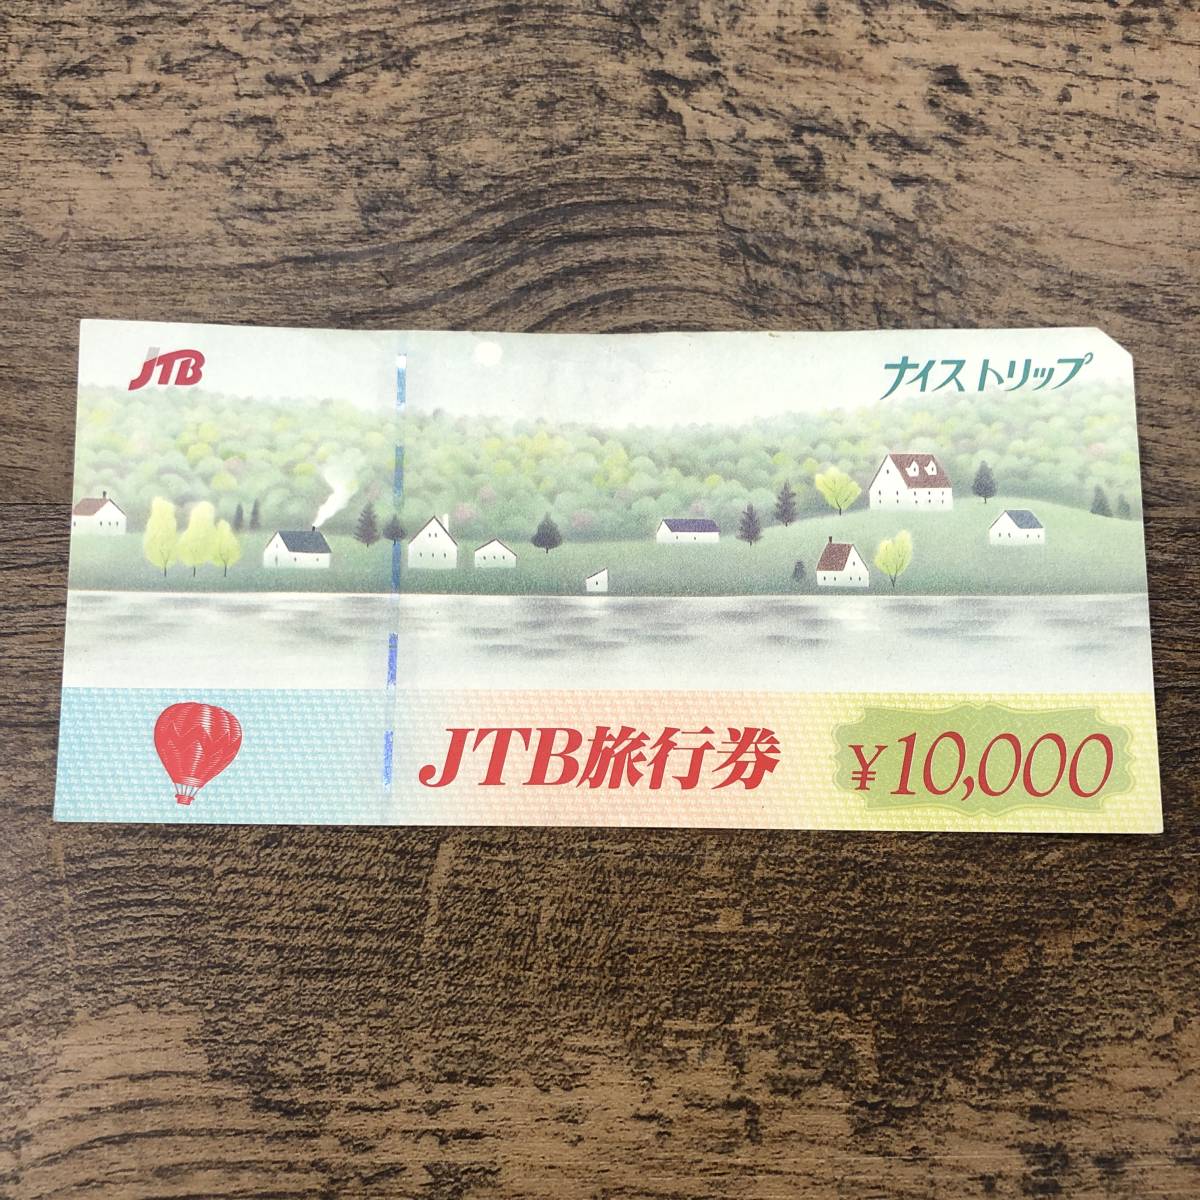 日本製 Jtb旅行券 ナイストリップ 未使用 1万円分 旅行券 Beta Stanncharlotte Org